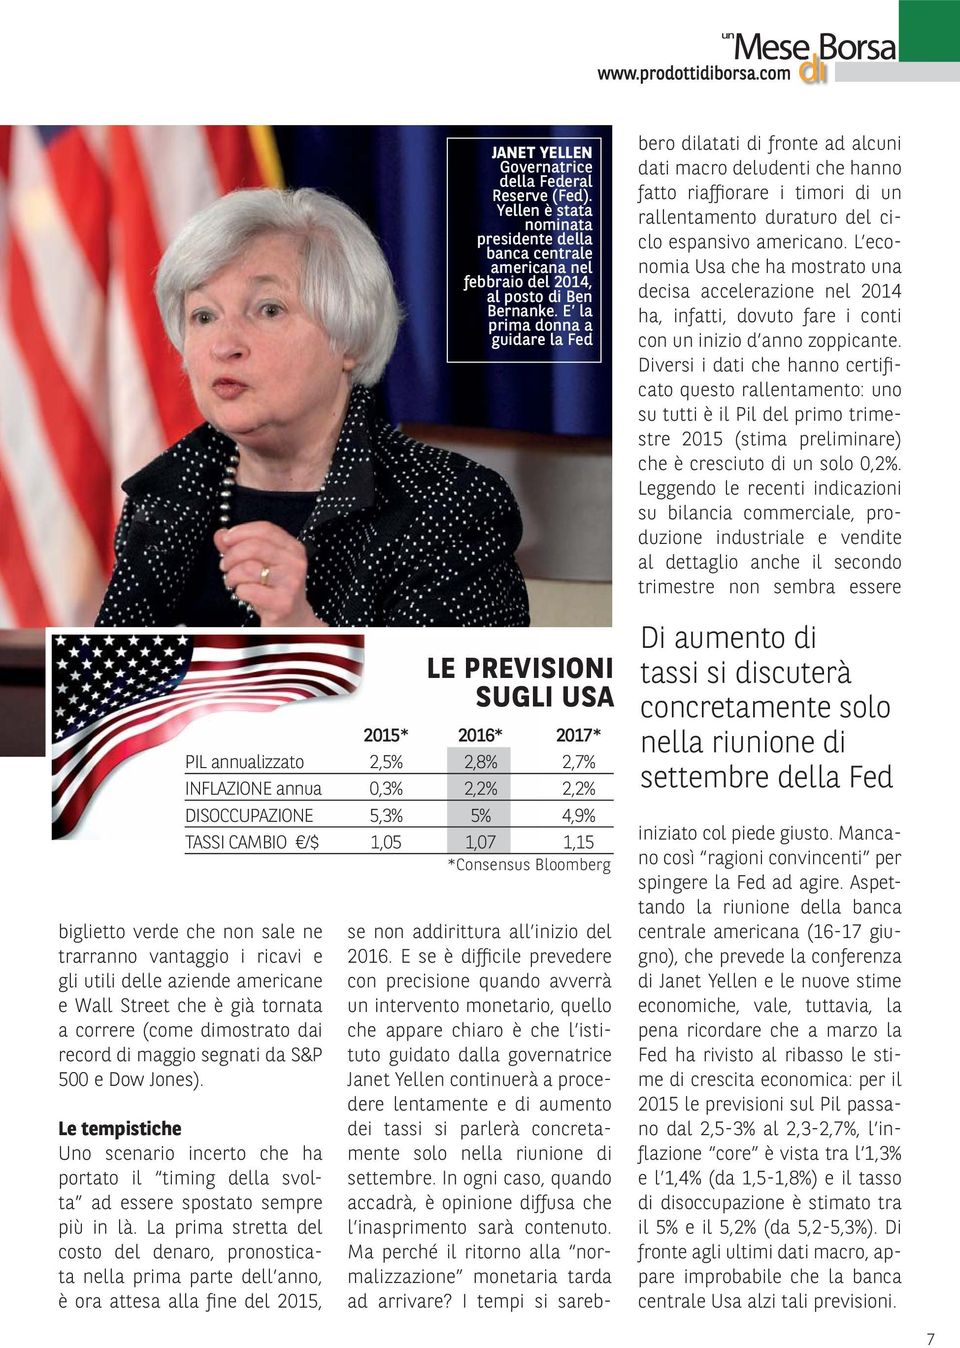 La prima stretta del costo del denaro, pronosticata nella prima parte dell anno, è ora attesa alla fine del 2015, JANET YELLEN Governatrice della Federal Reserve (Fed).